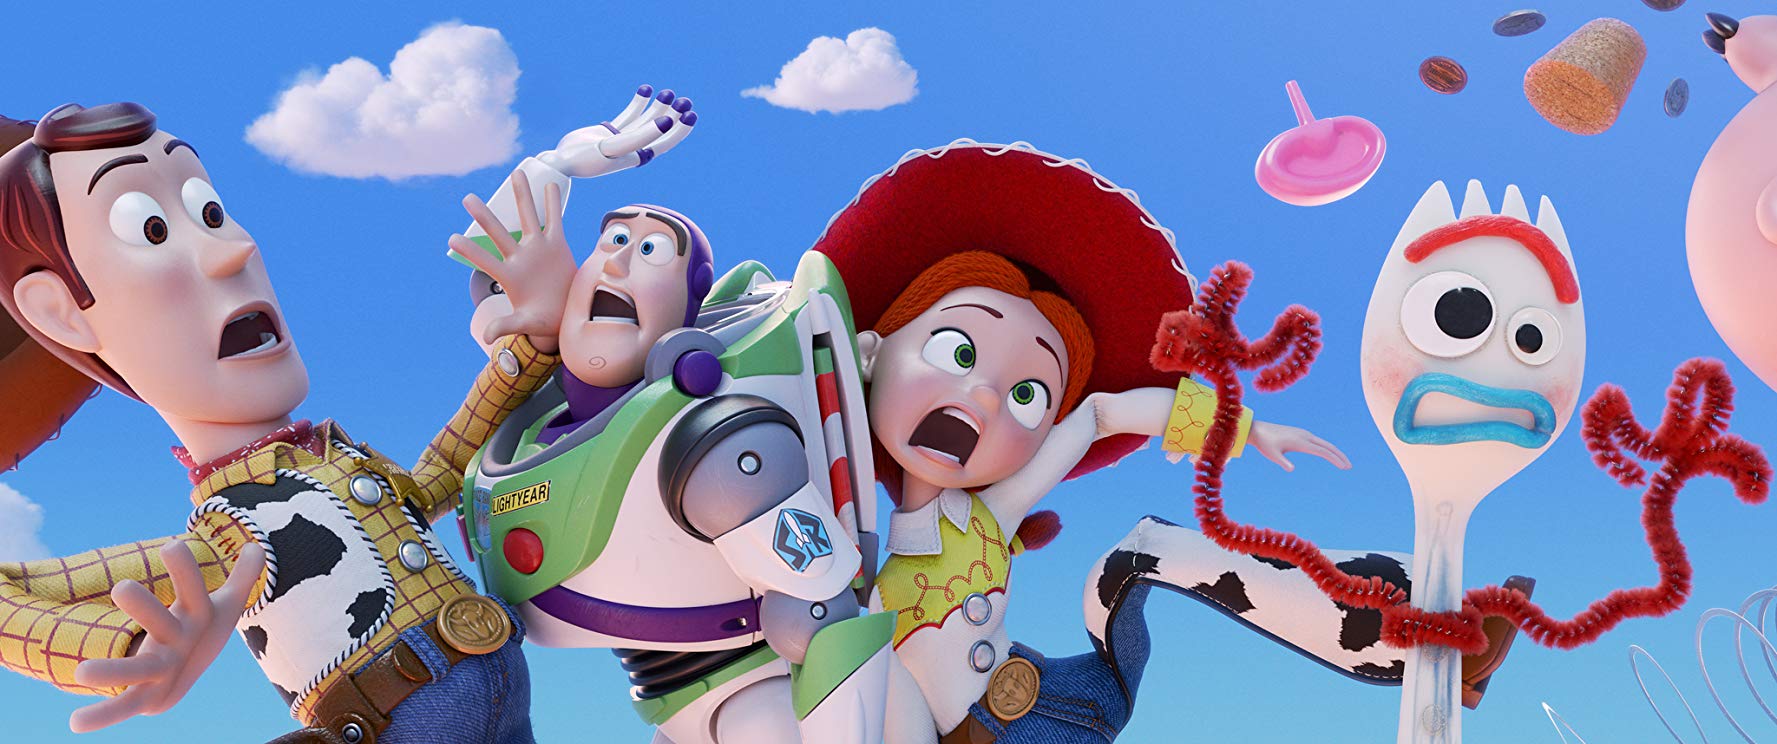 Toy Story 4: játékok a teljes idegösszeomlás szélén